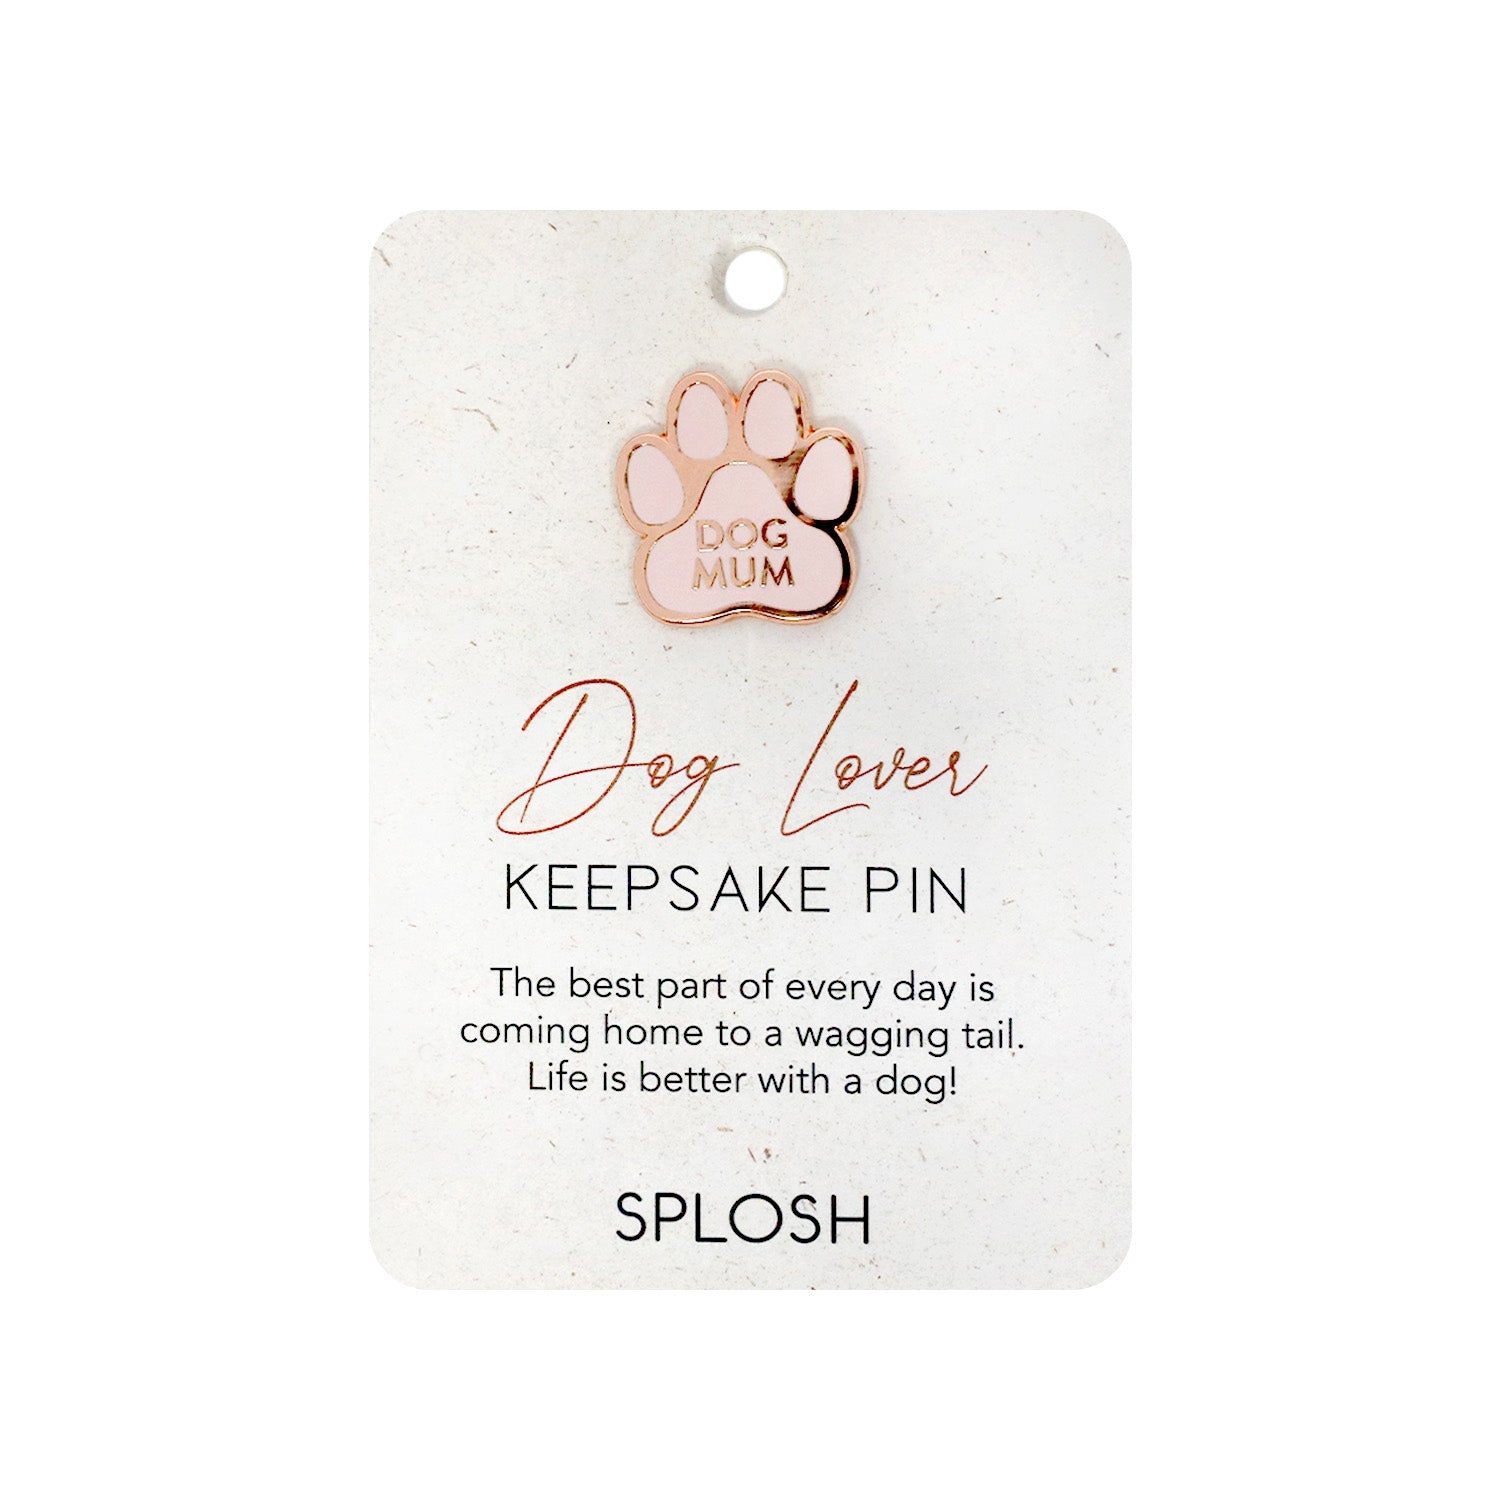 Splosh Dog Lover Keepsake Pin